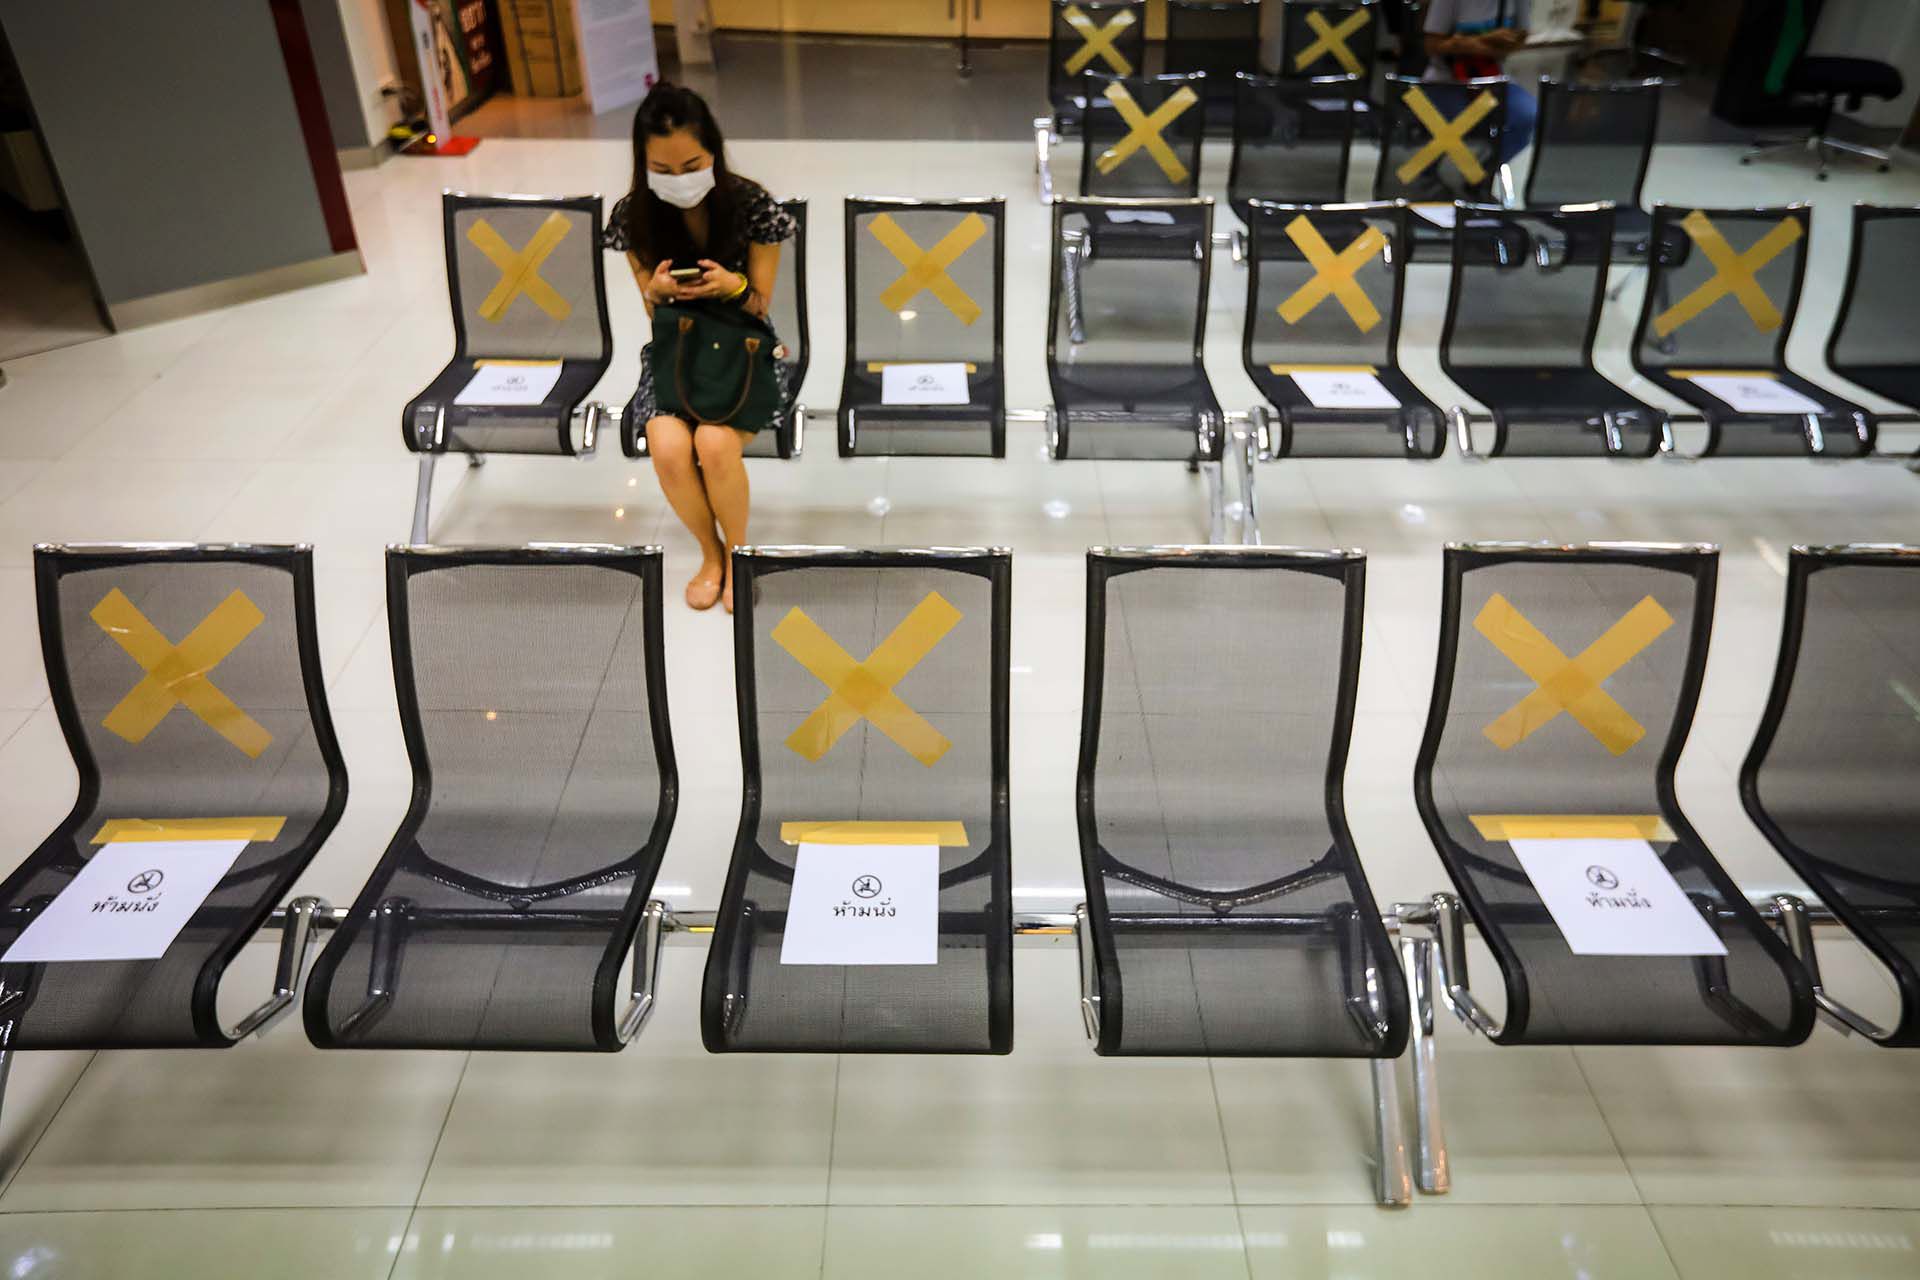 Una sucursal bancaria de Bangkok muestra en qué sillas sentarse y en cuáles no. 